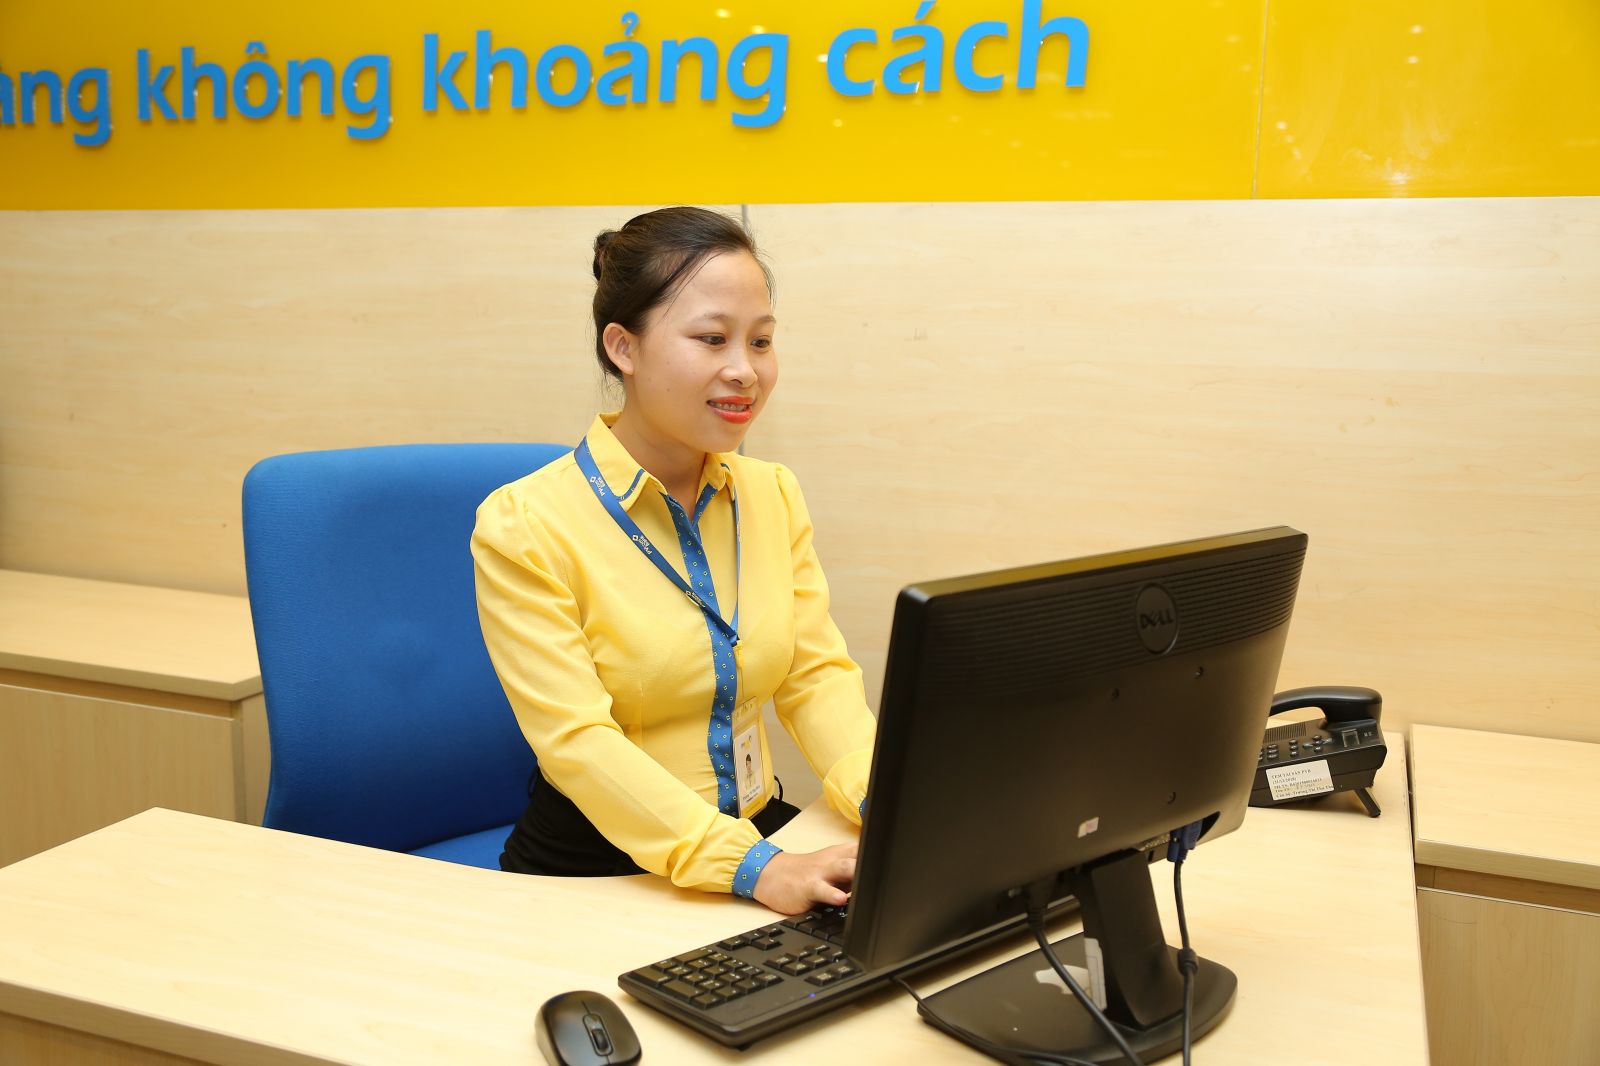 Bằng sự nỗ lực, cố gắng hết mình, Trịnh Thị Yến đã đạt được những thành công nhất định. Hiện tại cô đang đảm nhiệm vị trí Trưởng bộ phận Quản lý tín dụng tại PVcomBank Đông Đô.